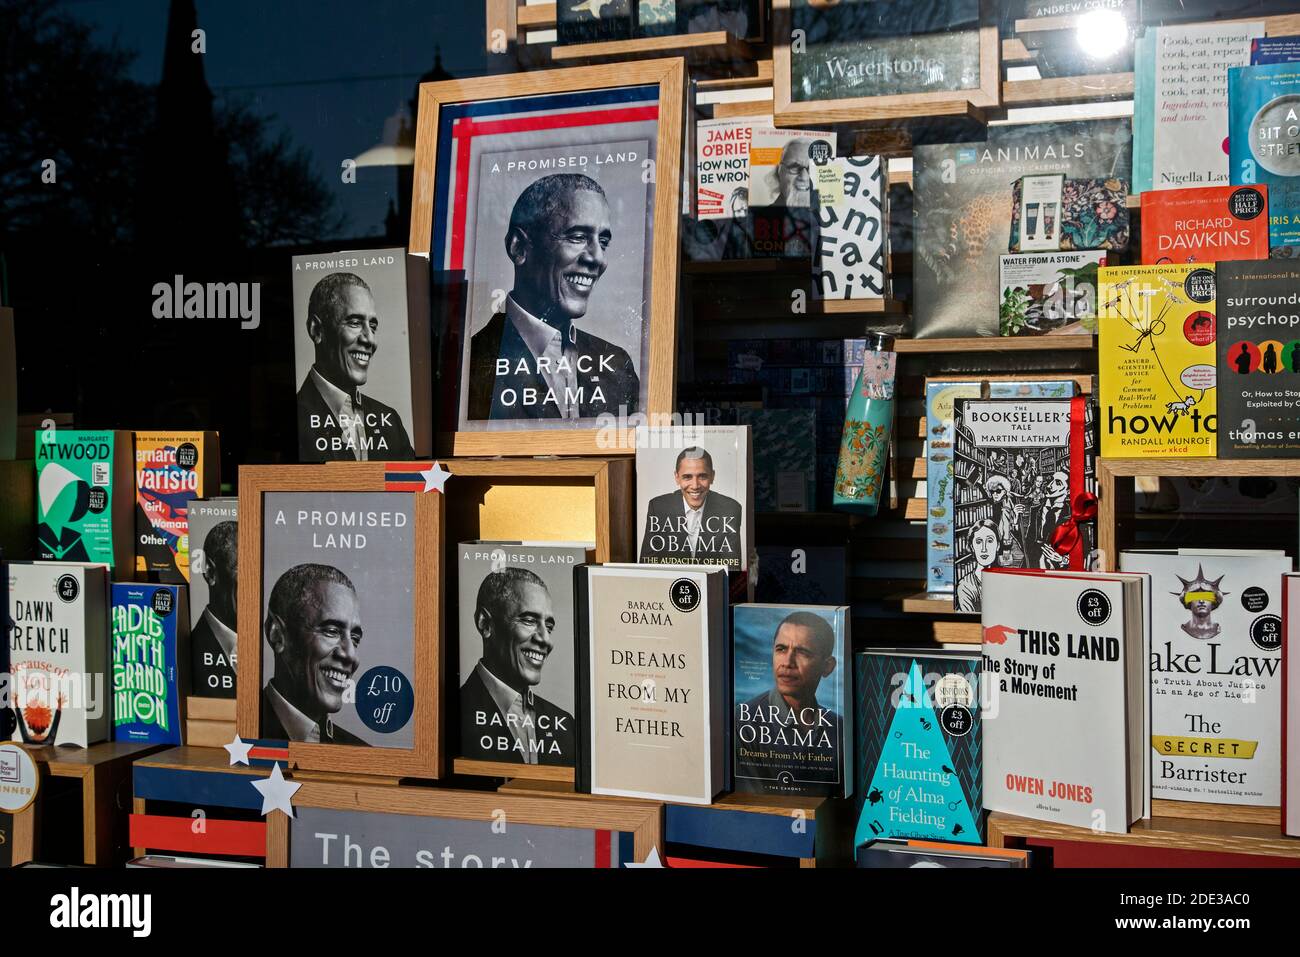 Copies des mémoires de Barack Obama "A Promise Land" proéminentes dans la fenêtre de la librairie Waterstones à Édimbourg, Écosse, Royaume-Uni. Banque D'Images